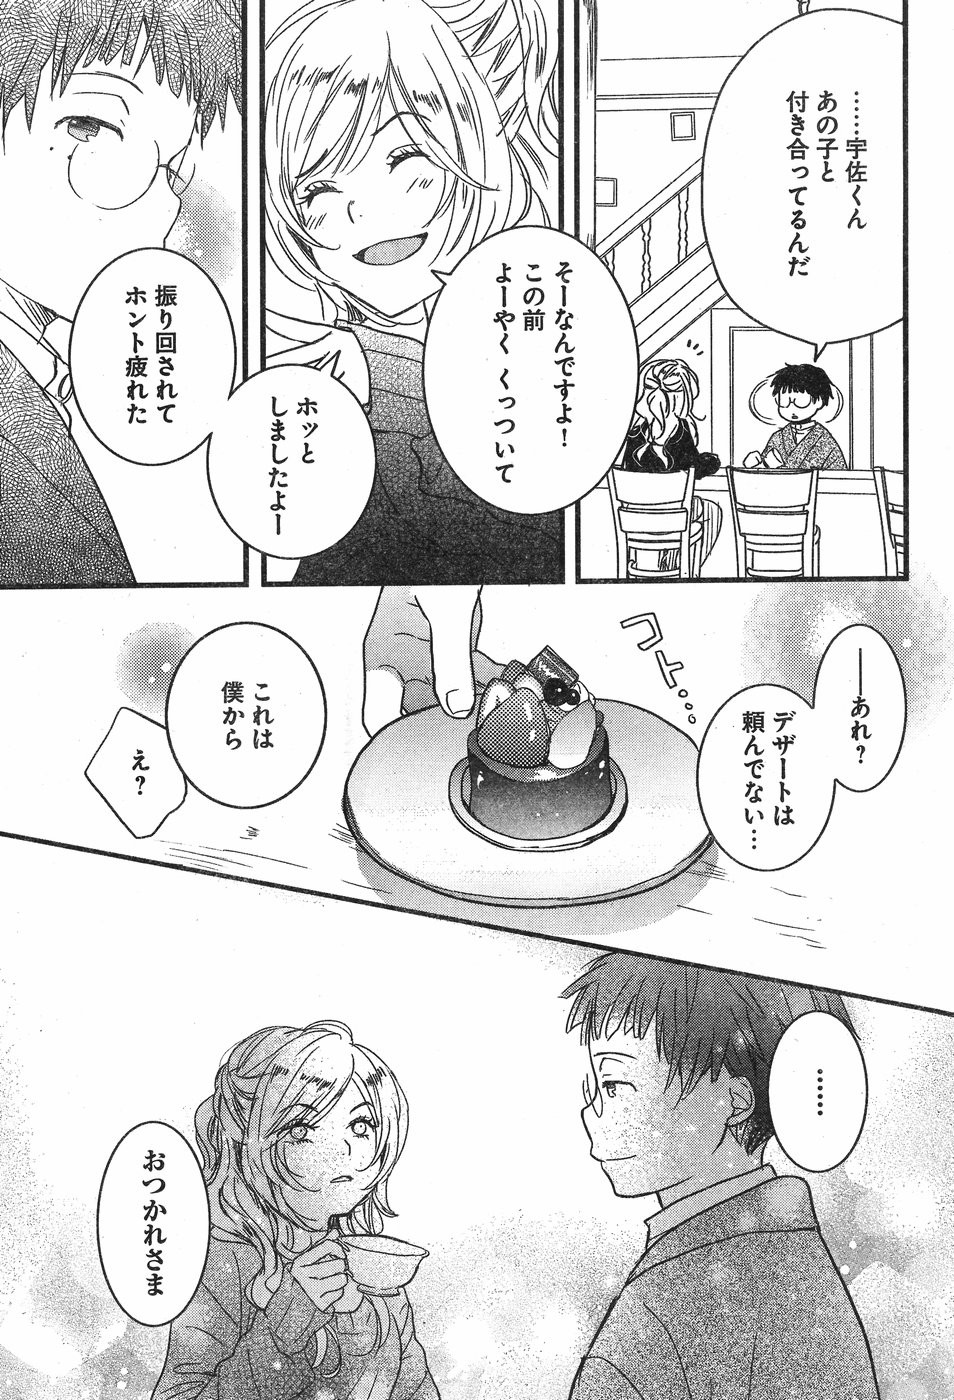 Bokura wa Minna Kawaisou - Chapter 84 - Page 5